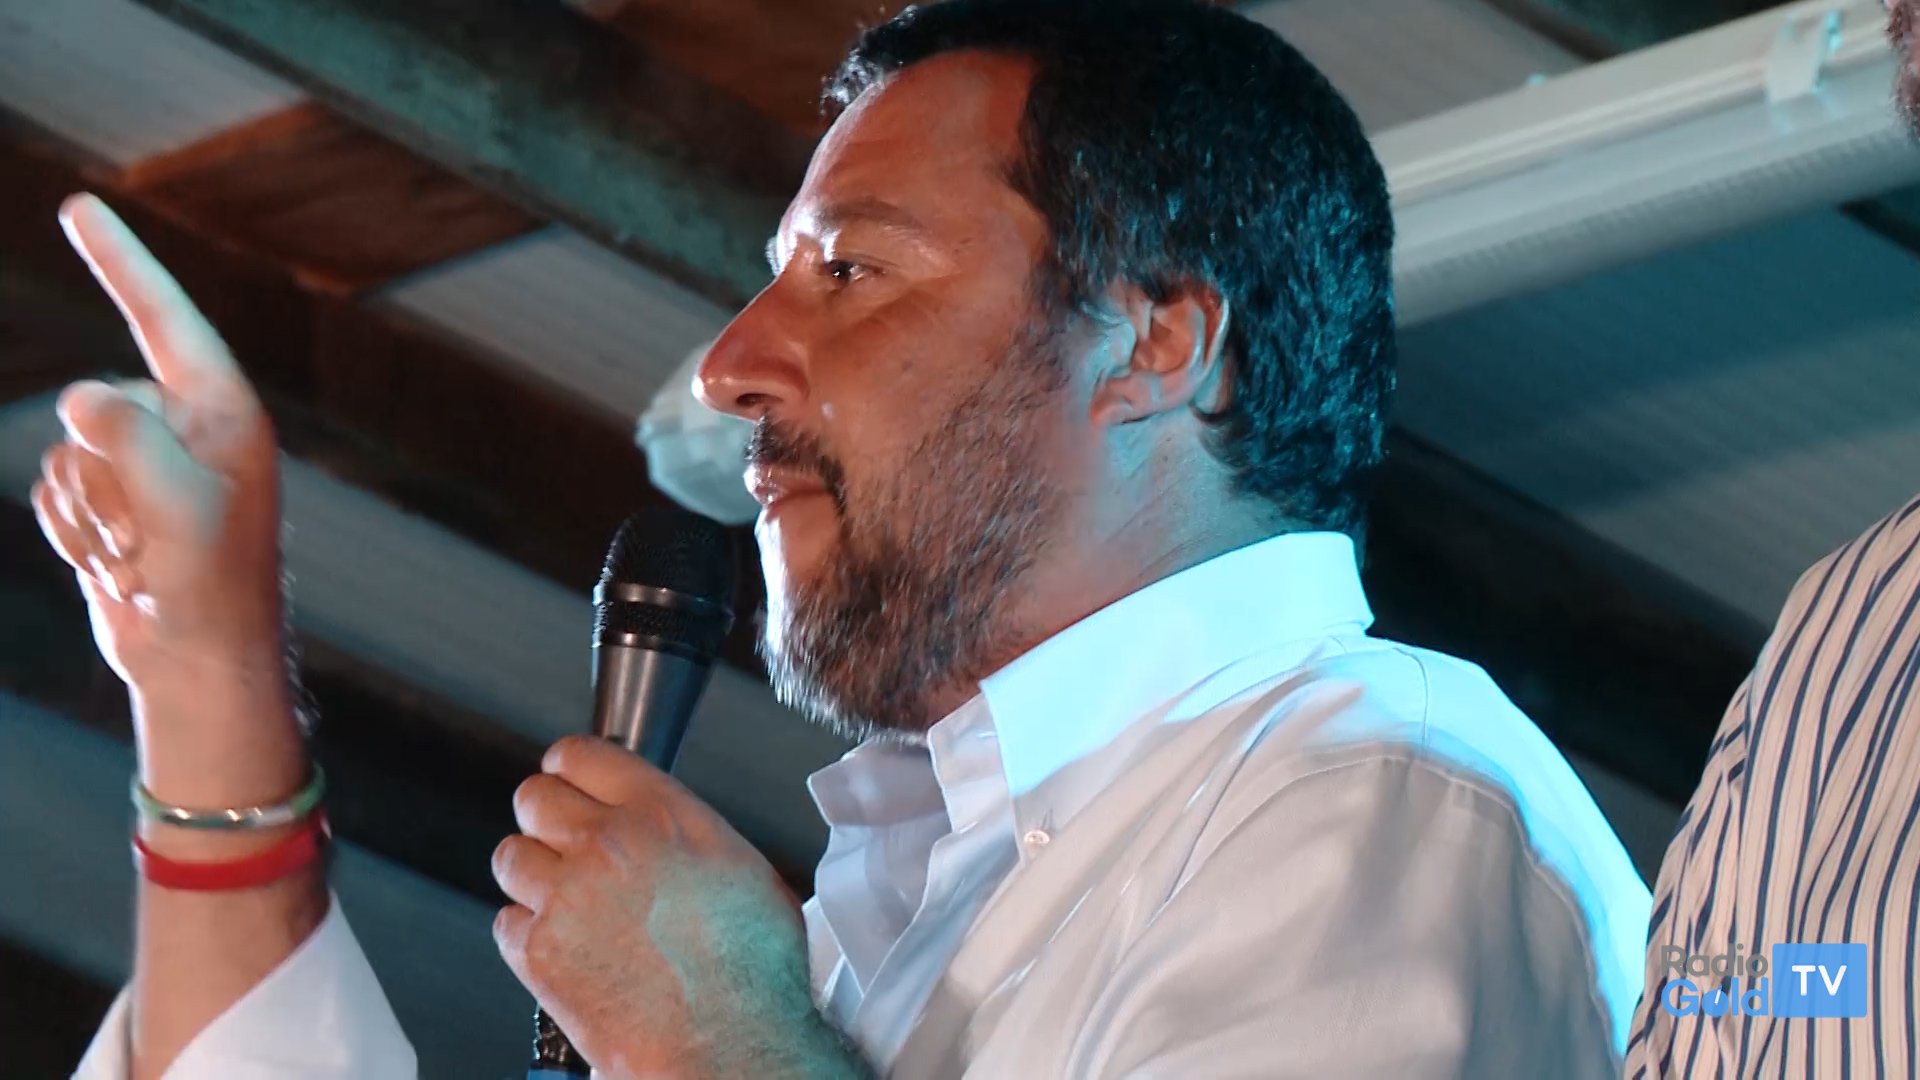 Altri due big a Novi per sostenere Perocchio: arrivano Salvini e Valditara